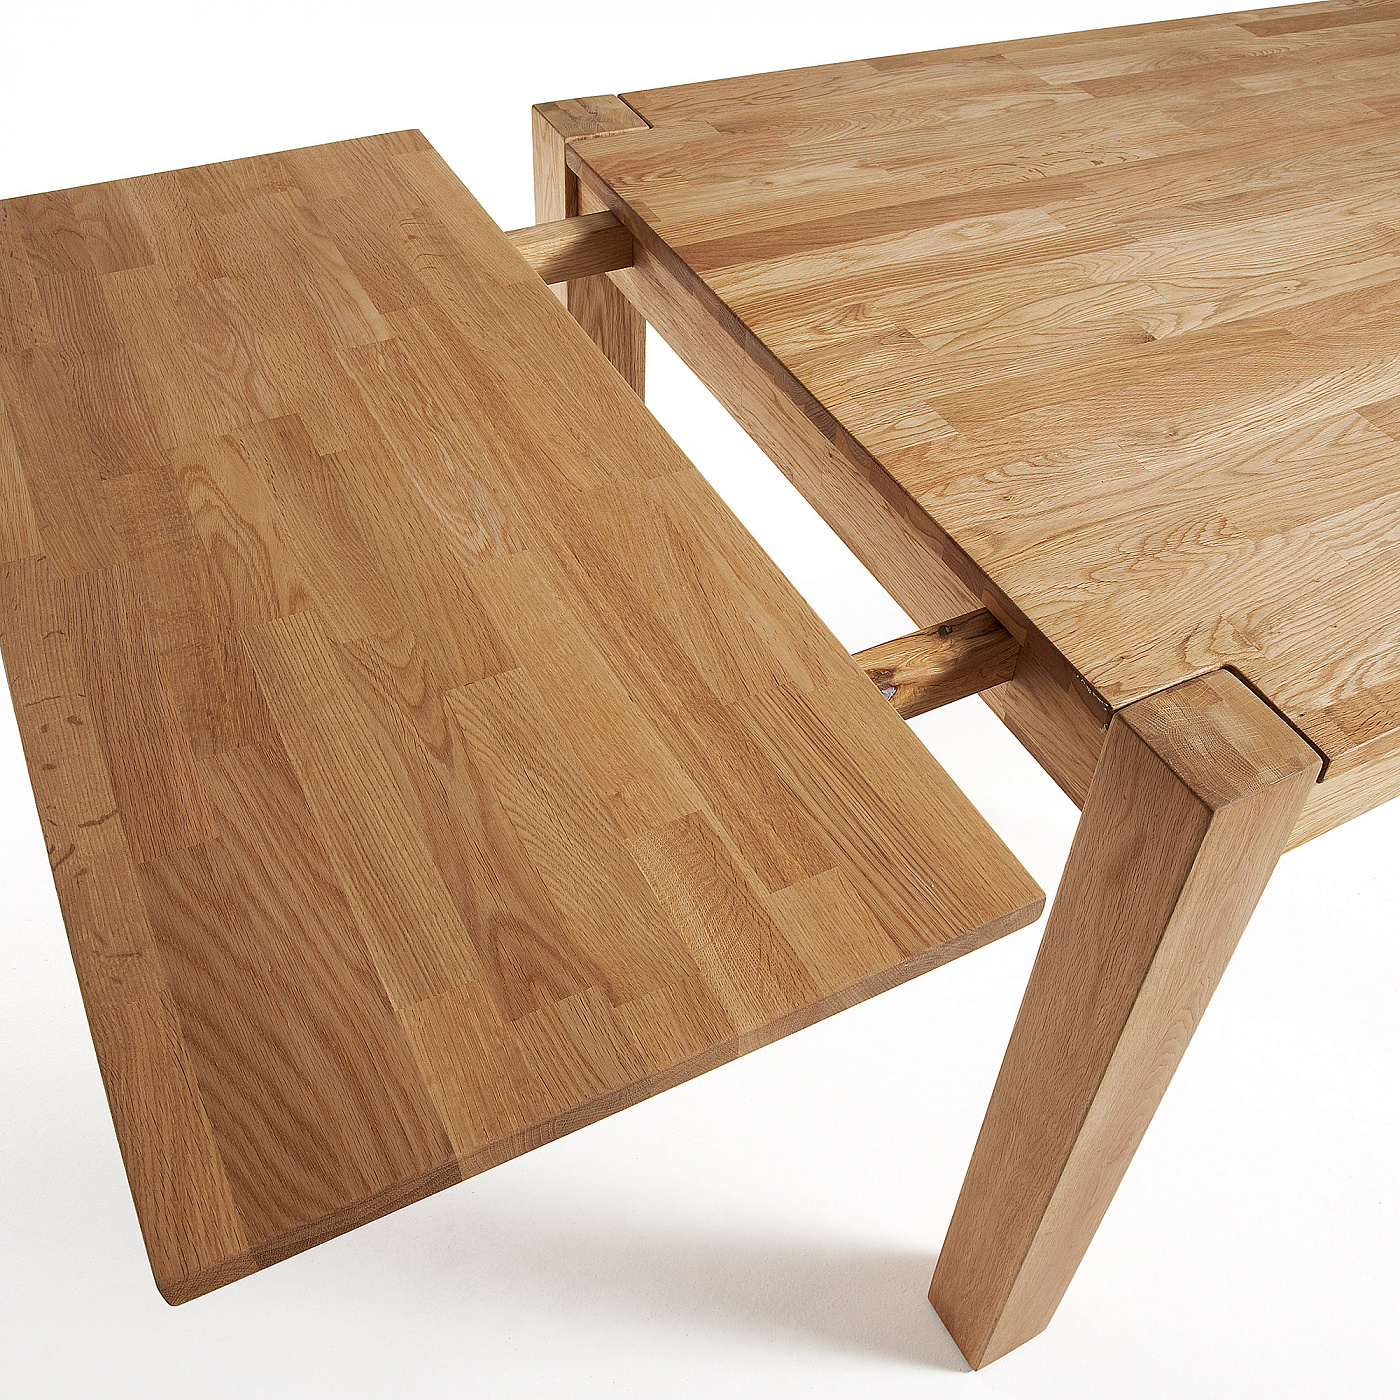 стол складной с деревянной столешницей